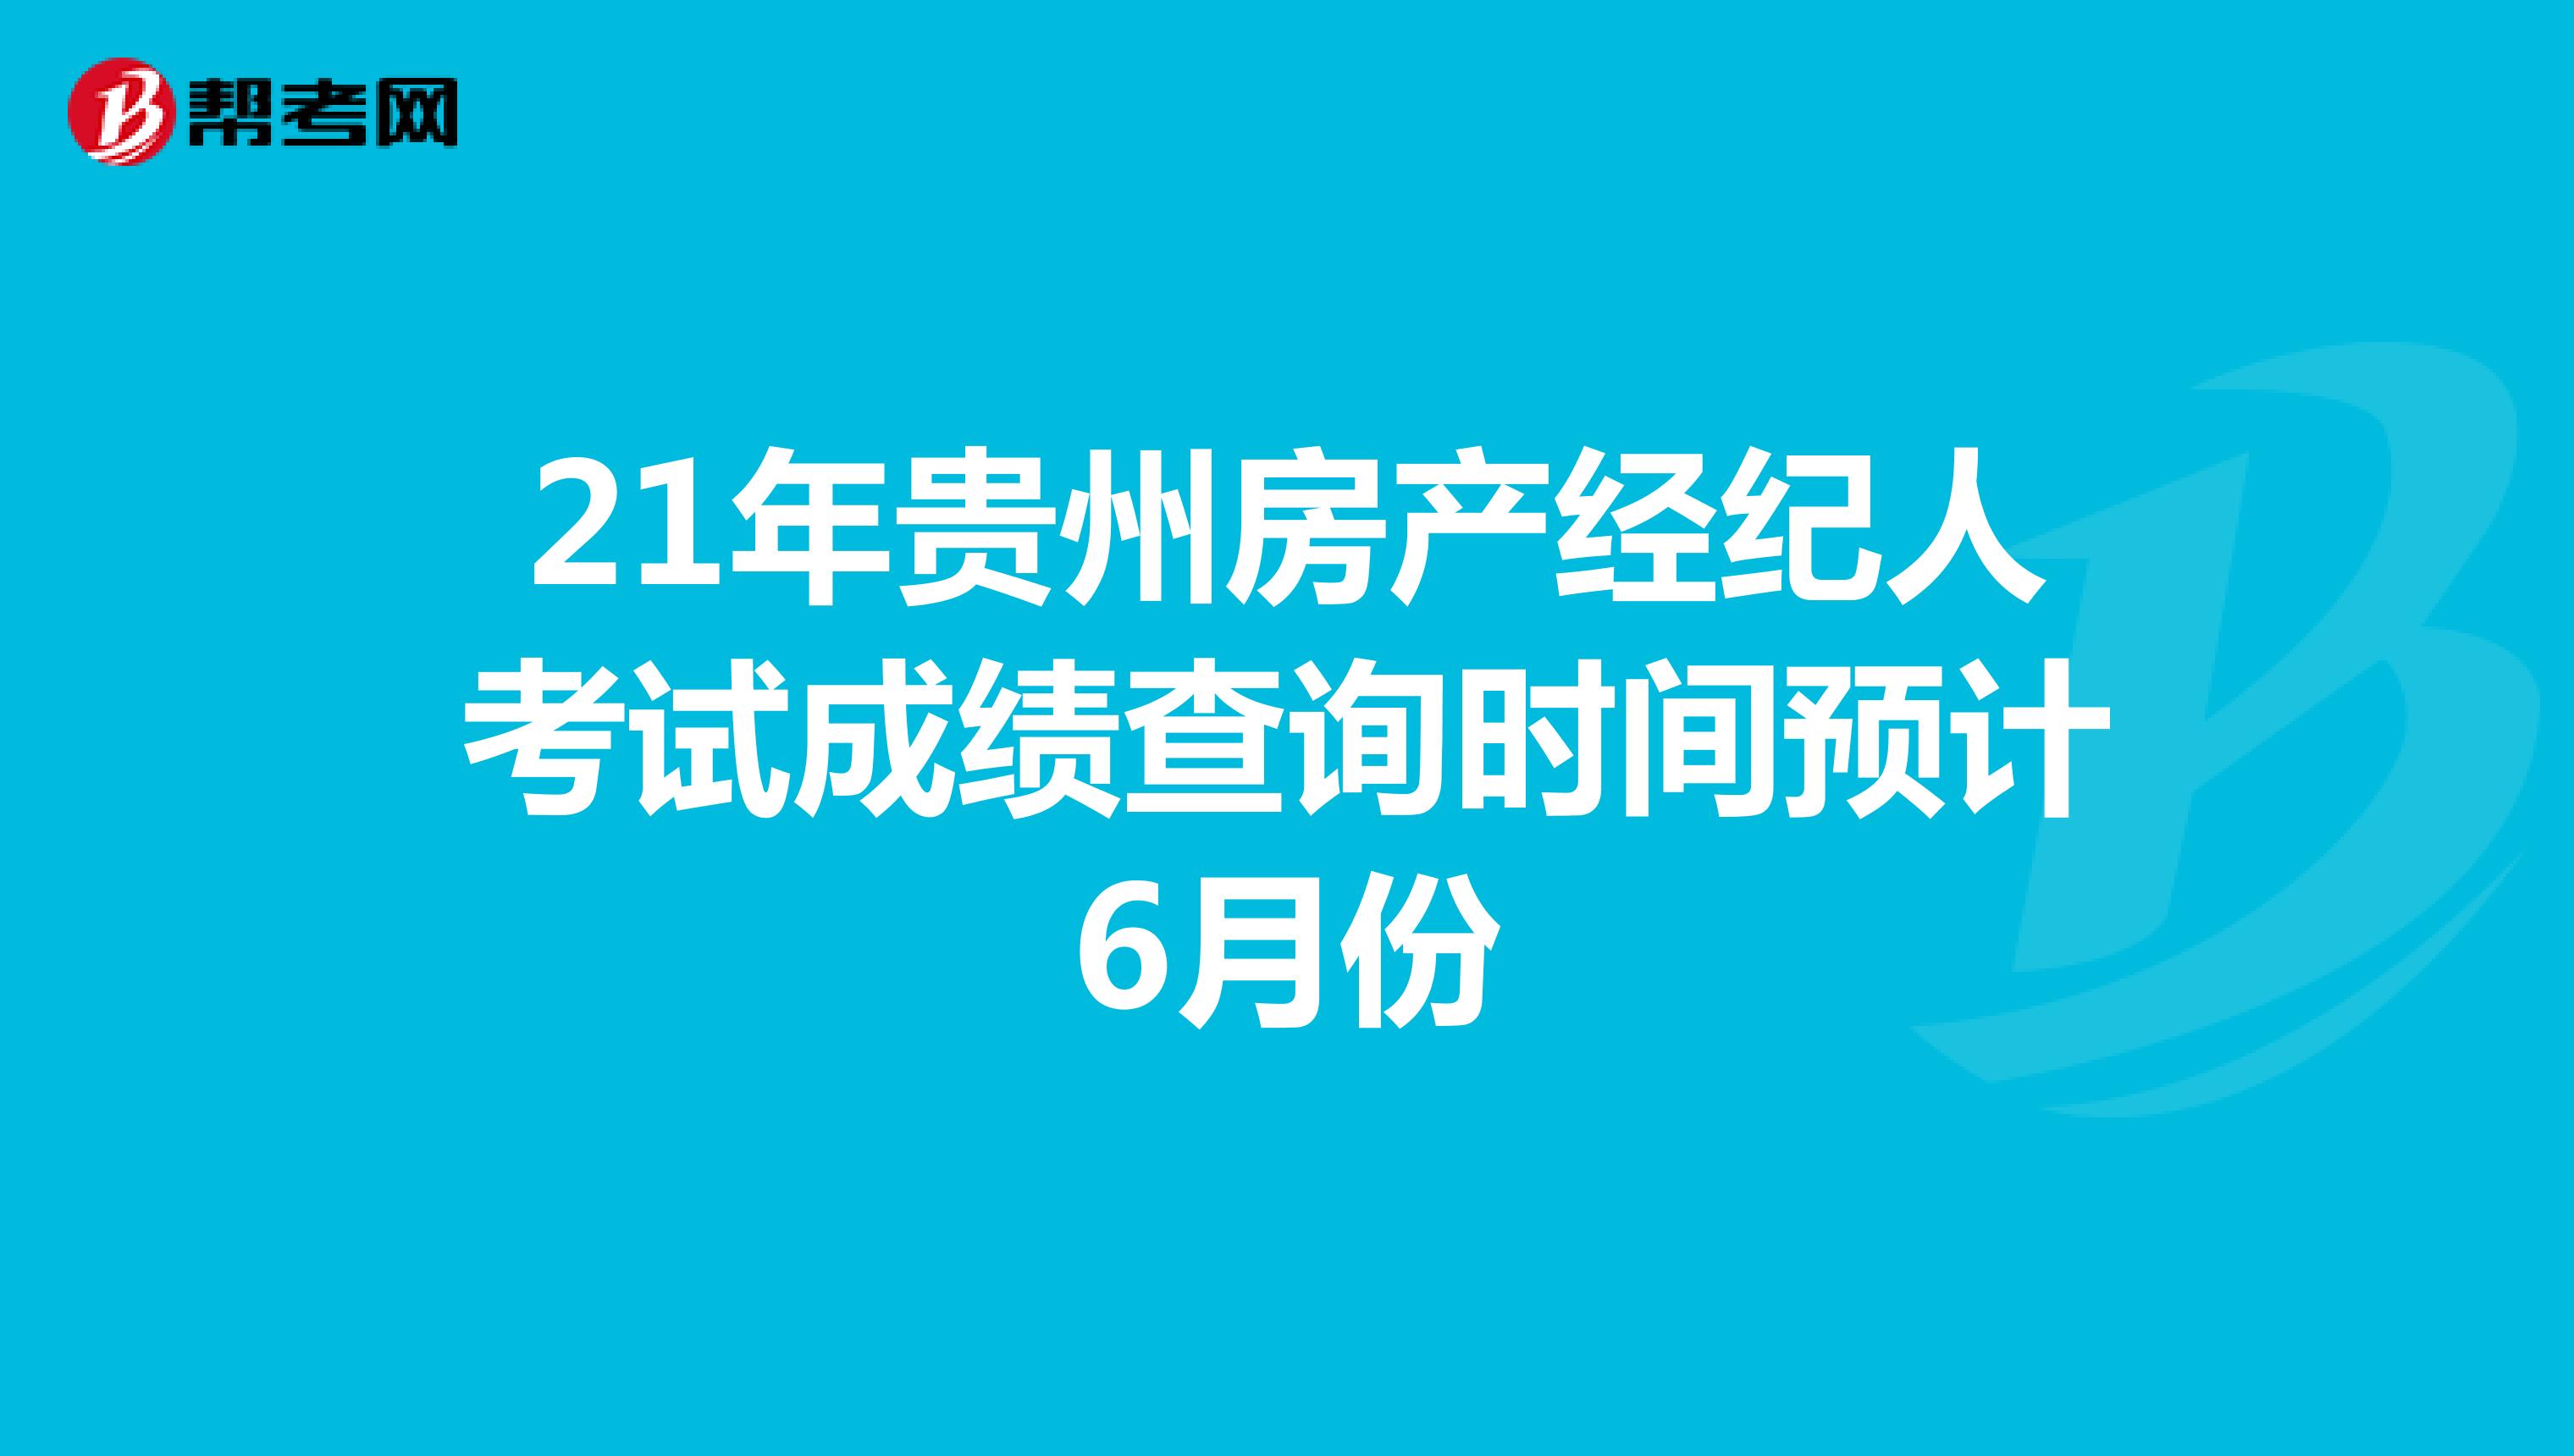 21年贵州房产经纪人考试成绩查询时间预计6月份